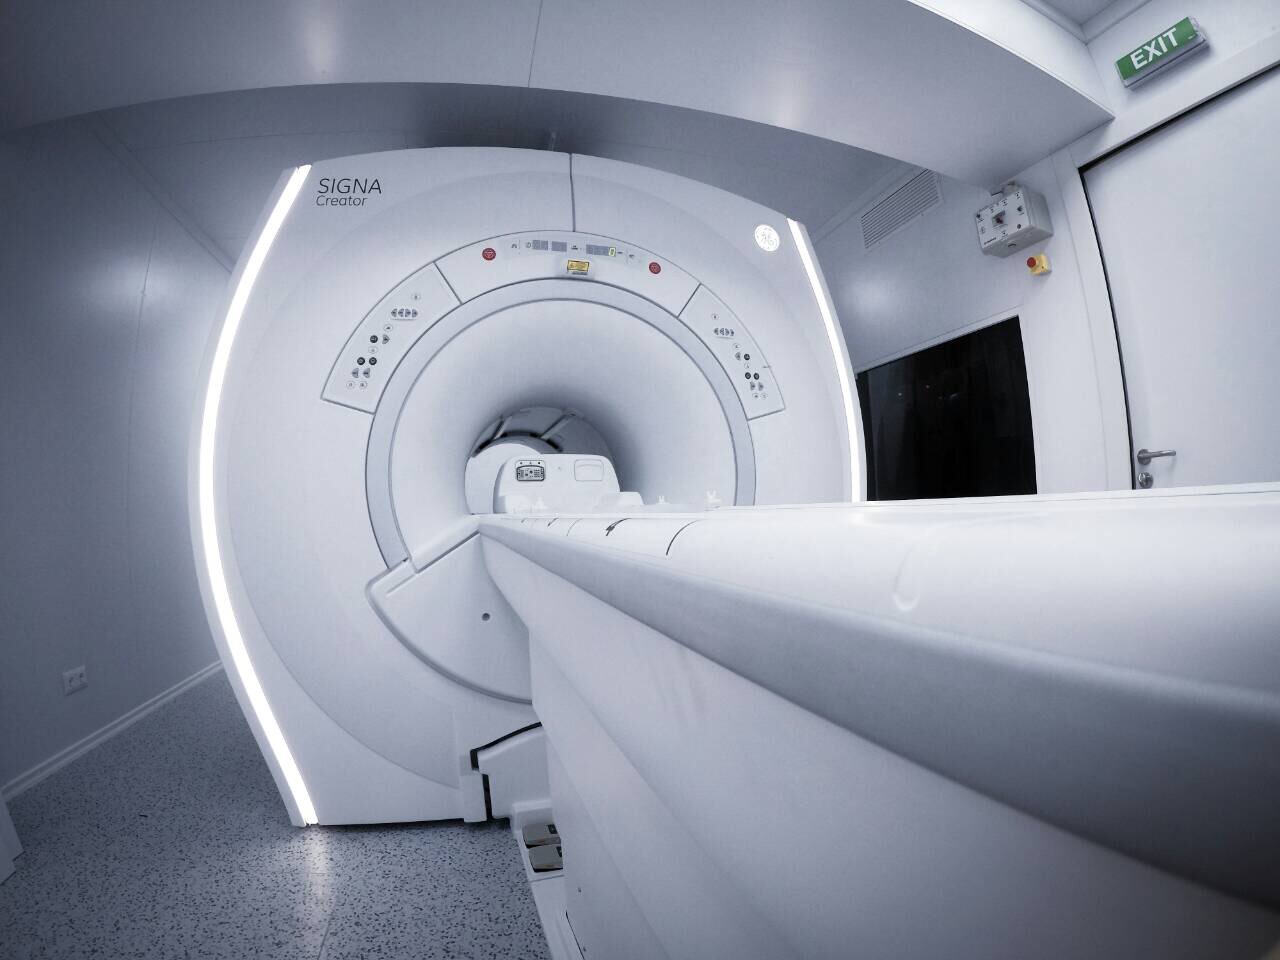 Alphavet's MRI Machine